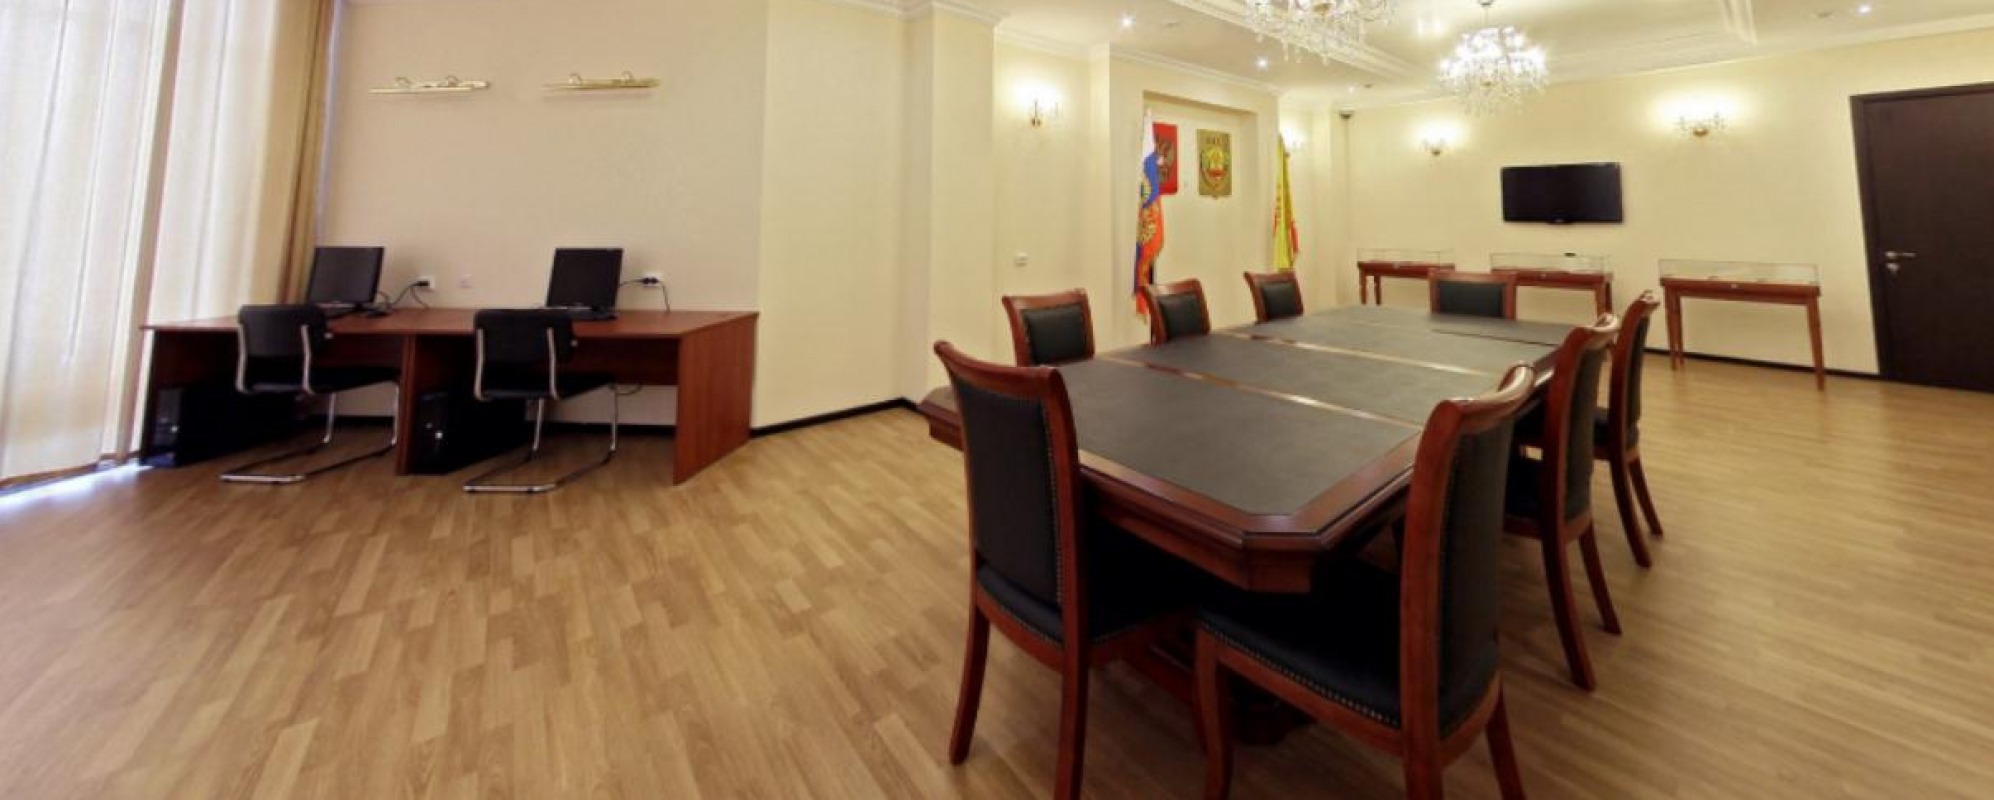 Фотографии конференц-зала Зал государственных символов Национальной библиотеки Чувашской Республики